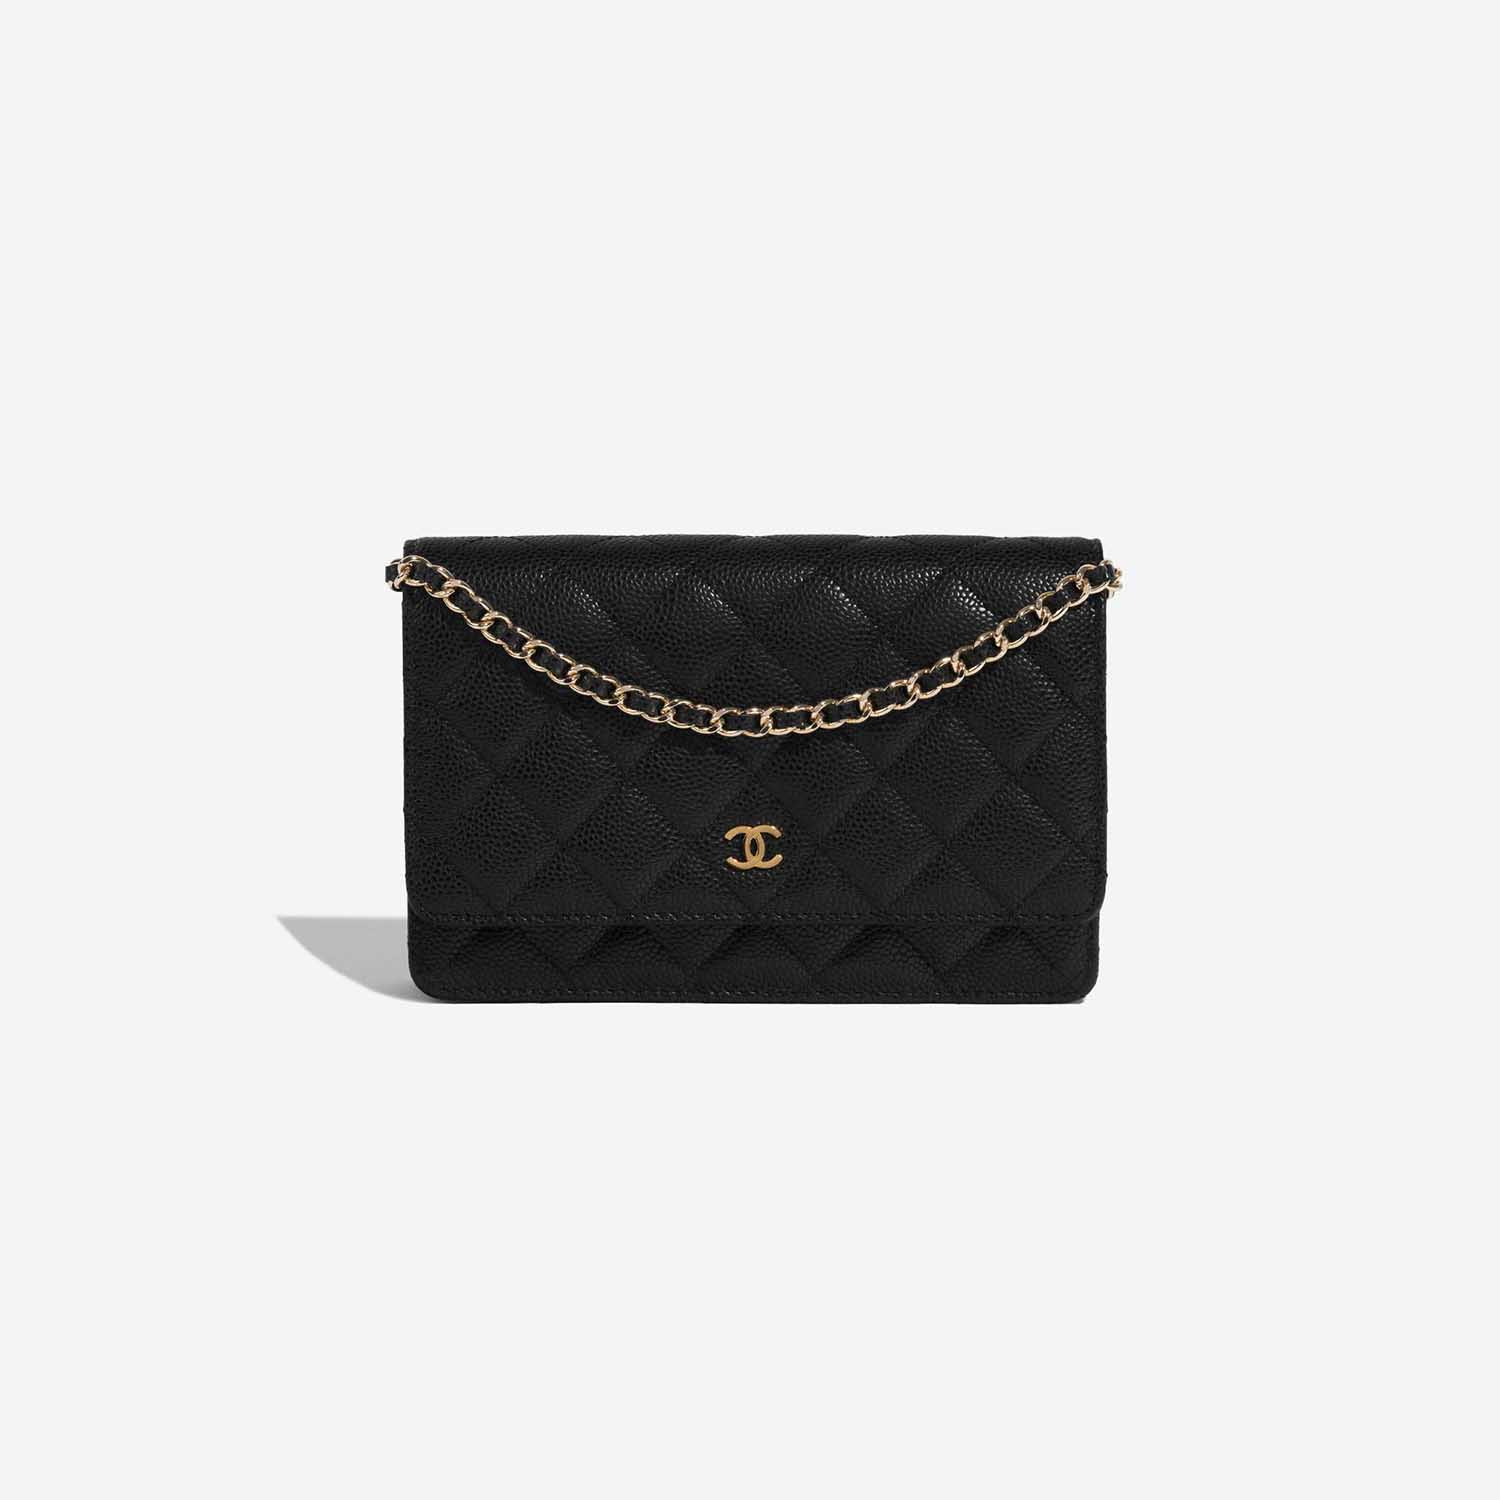 Sac Chanel d'occasion Timeless WOC Caviar Black Black Front | Vendez votre sac de créateur sur Saclab.com